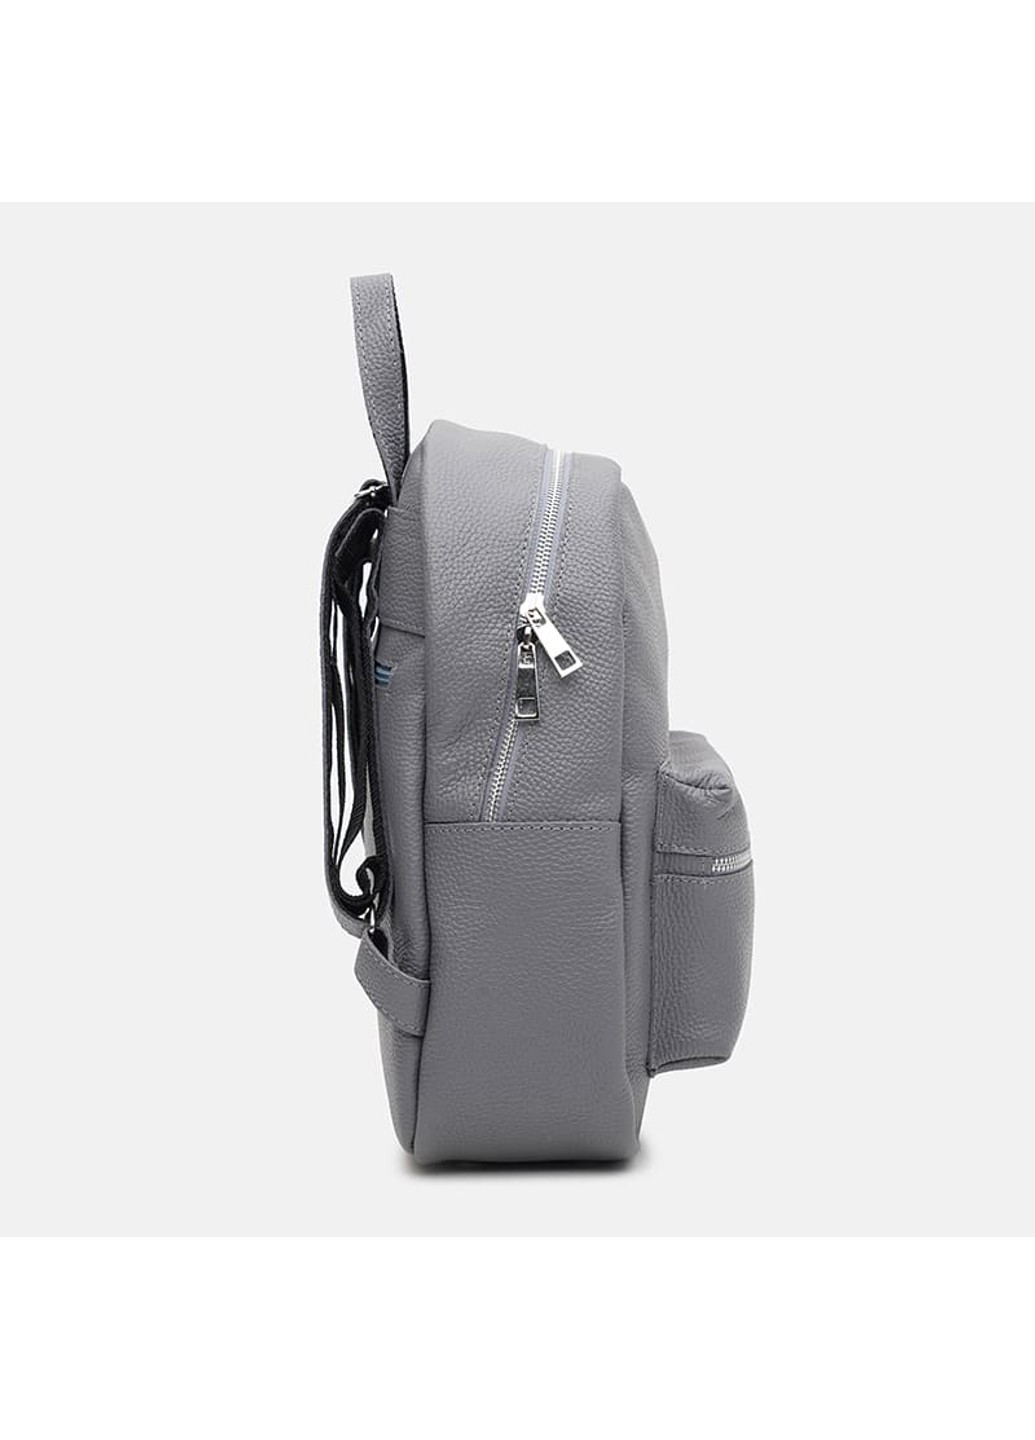 Жіночий шкіряний рюкзак 1l655gr-grey Ricco Grande (266143594)